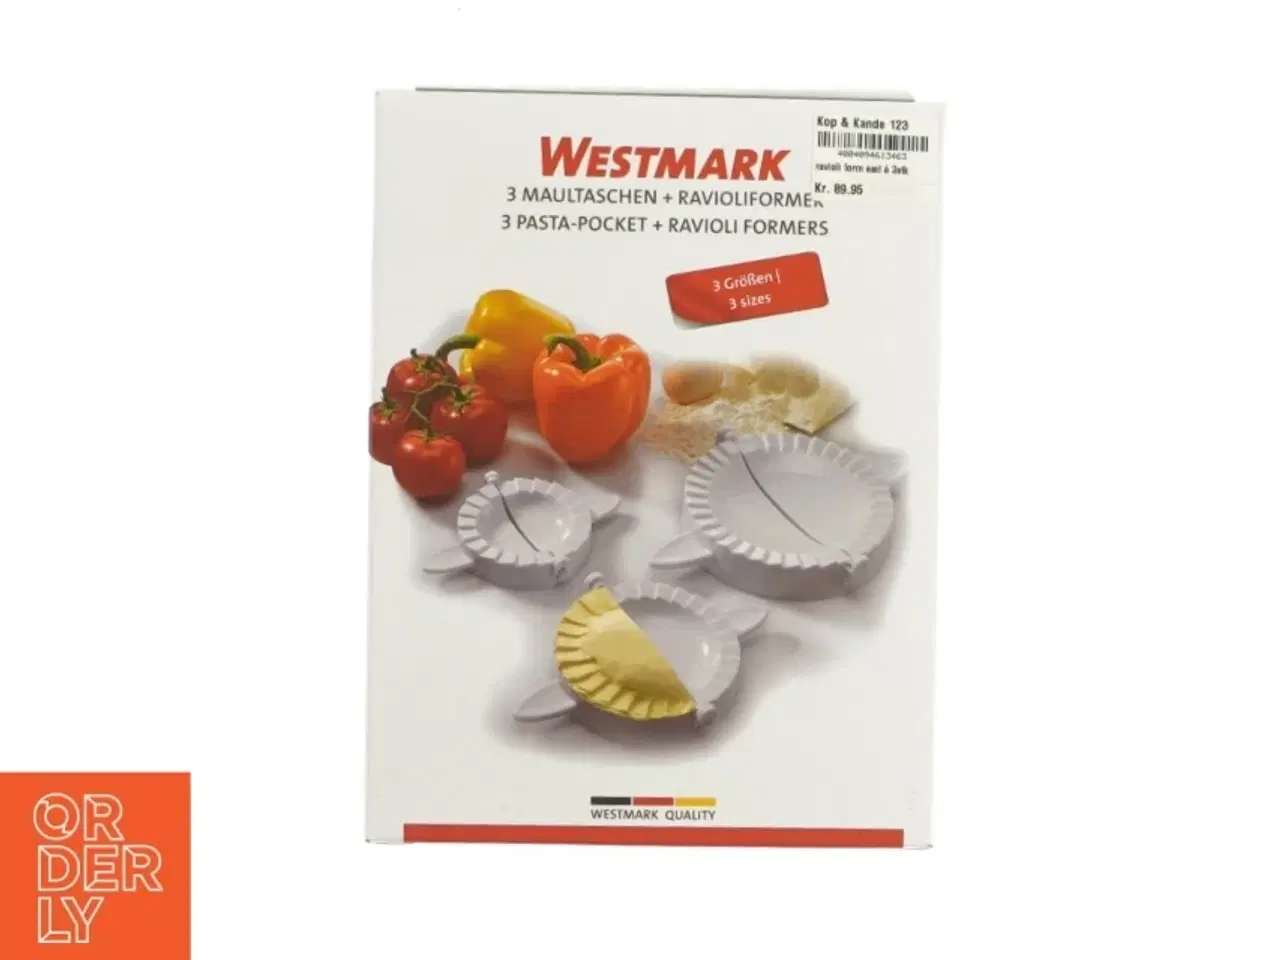 Billede 1 - Pasta-pocket ogravioli forme fra Westmark